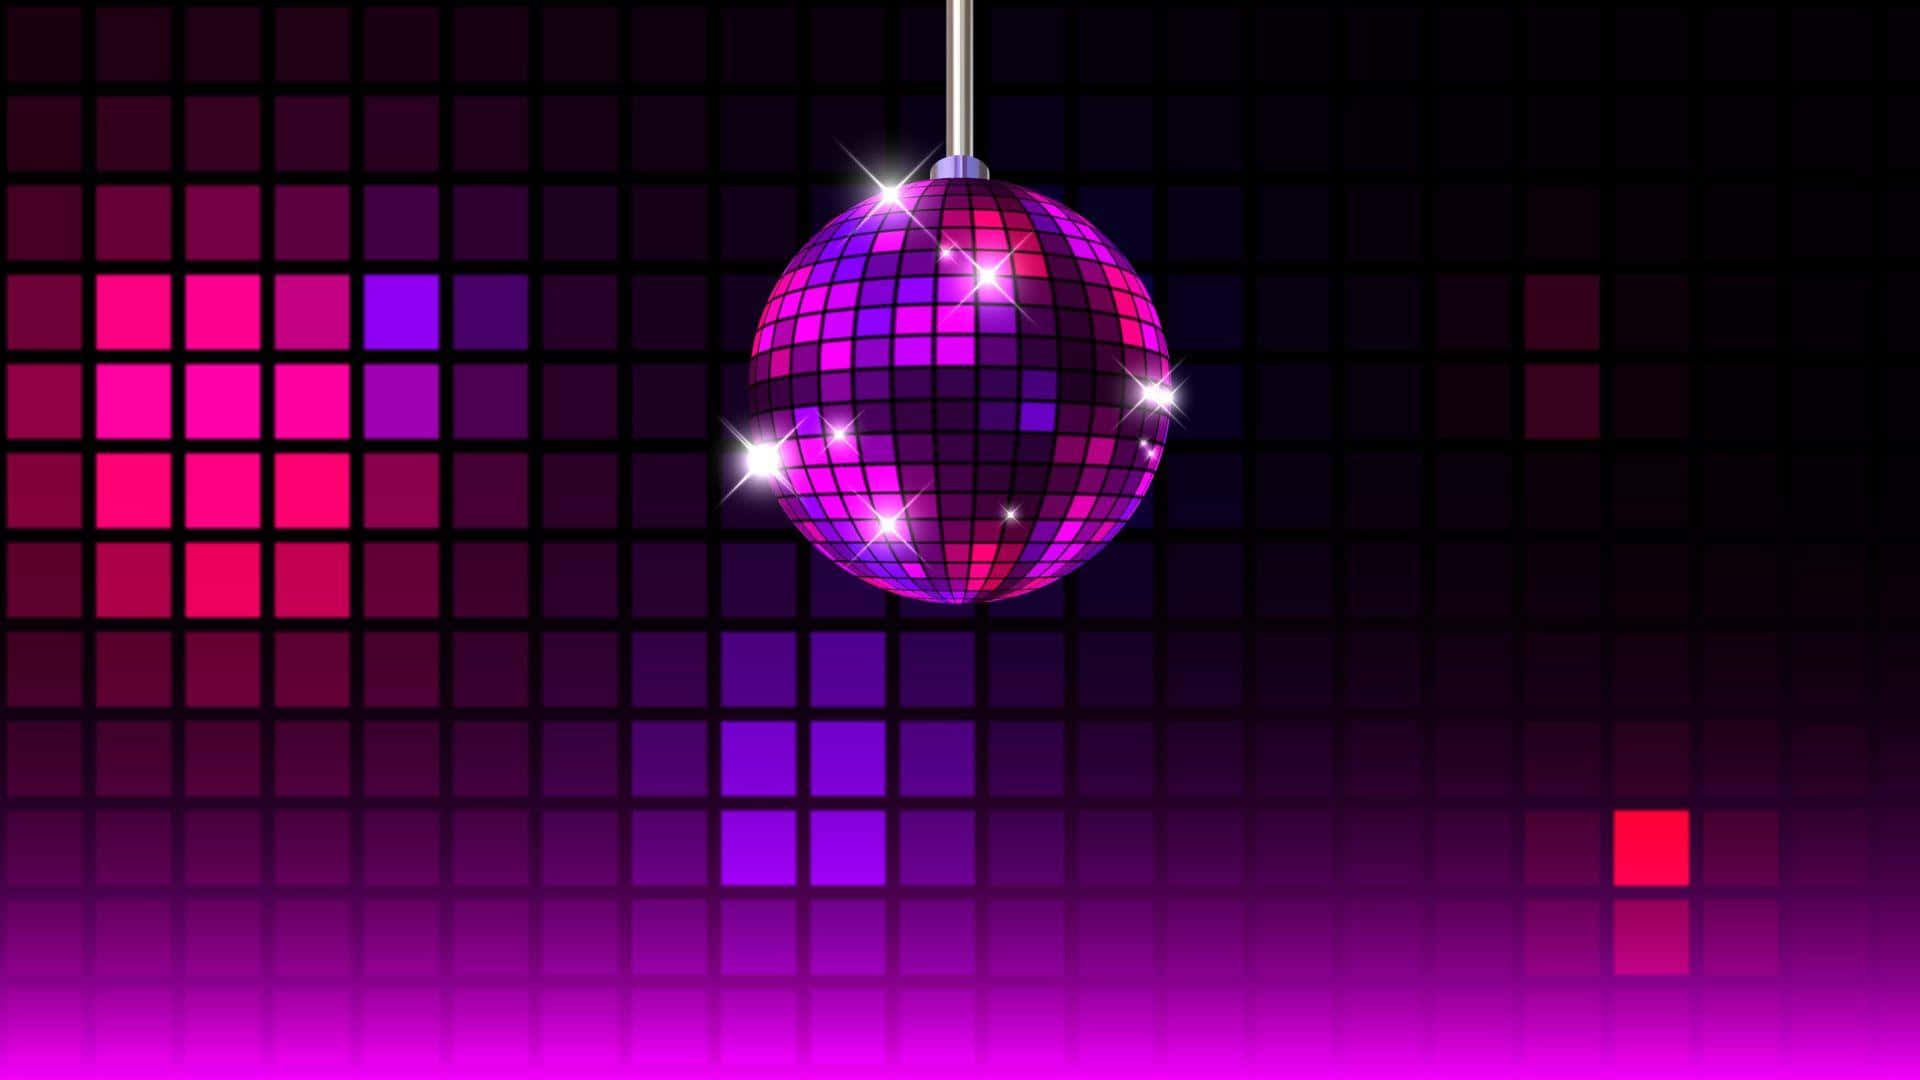 Violetterspiegelball, Musikpad-disco-hintergrund.